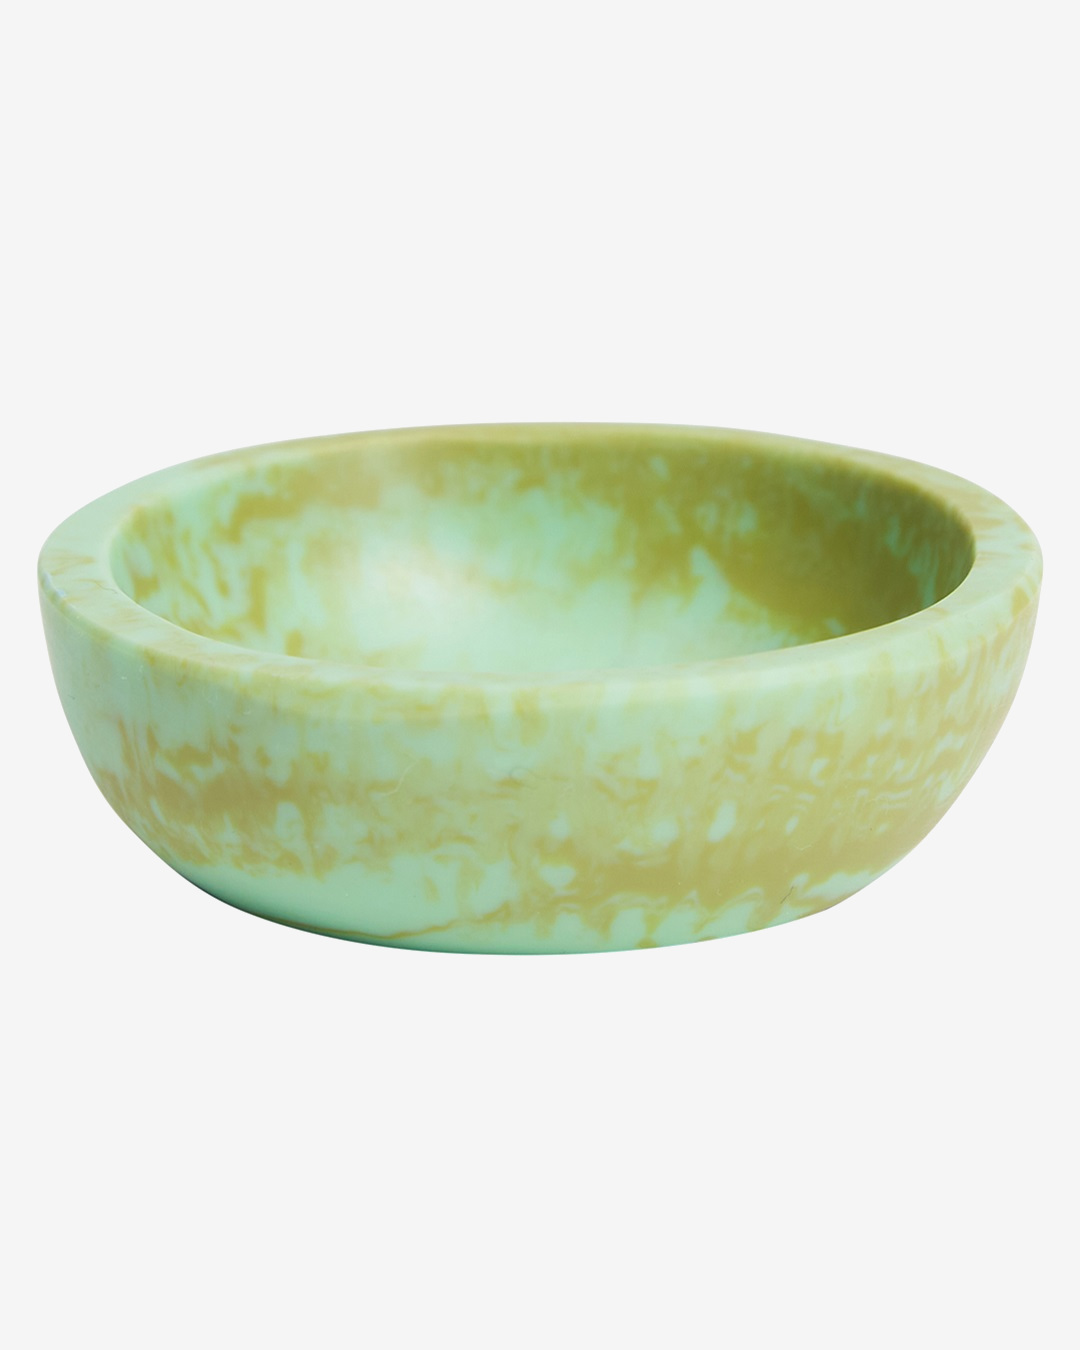 Artichoke green round bowl